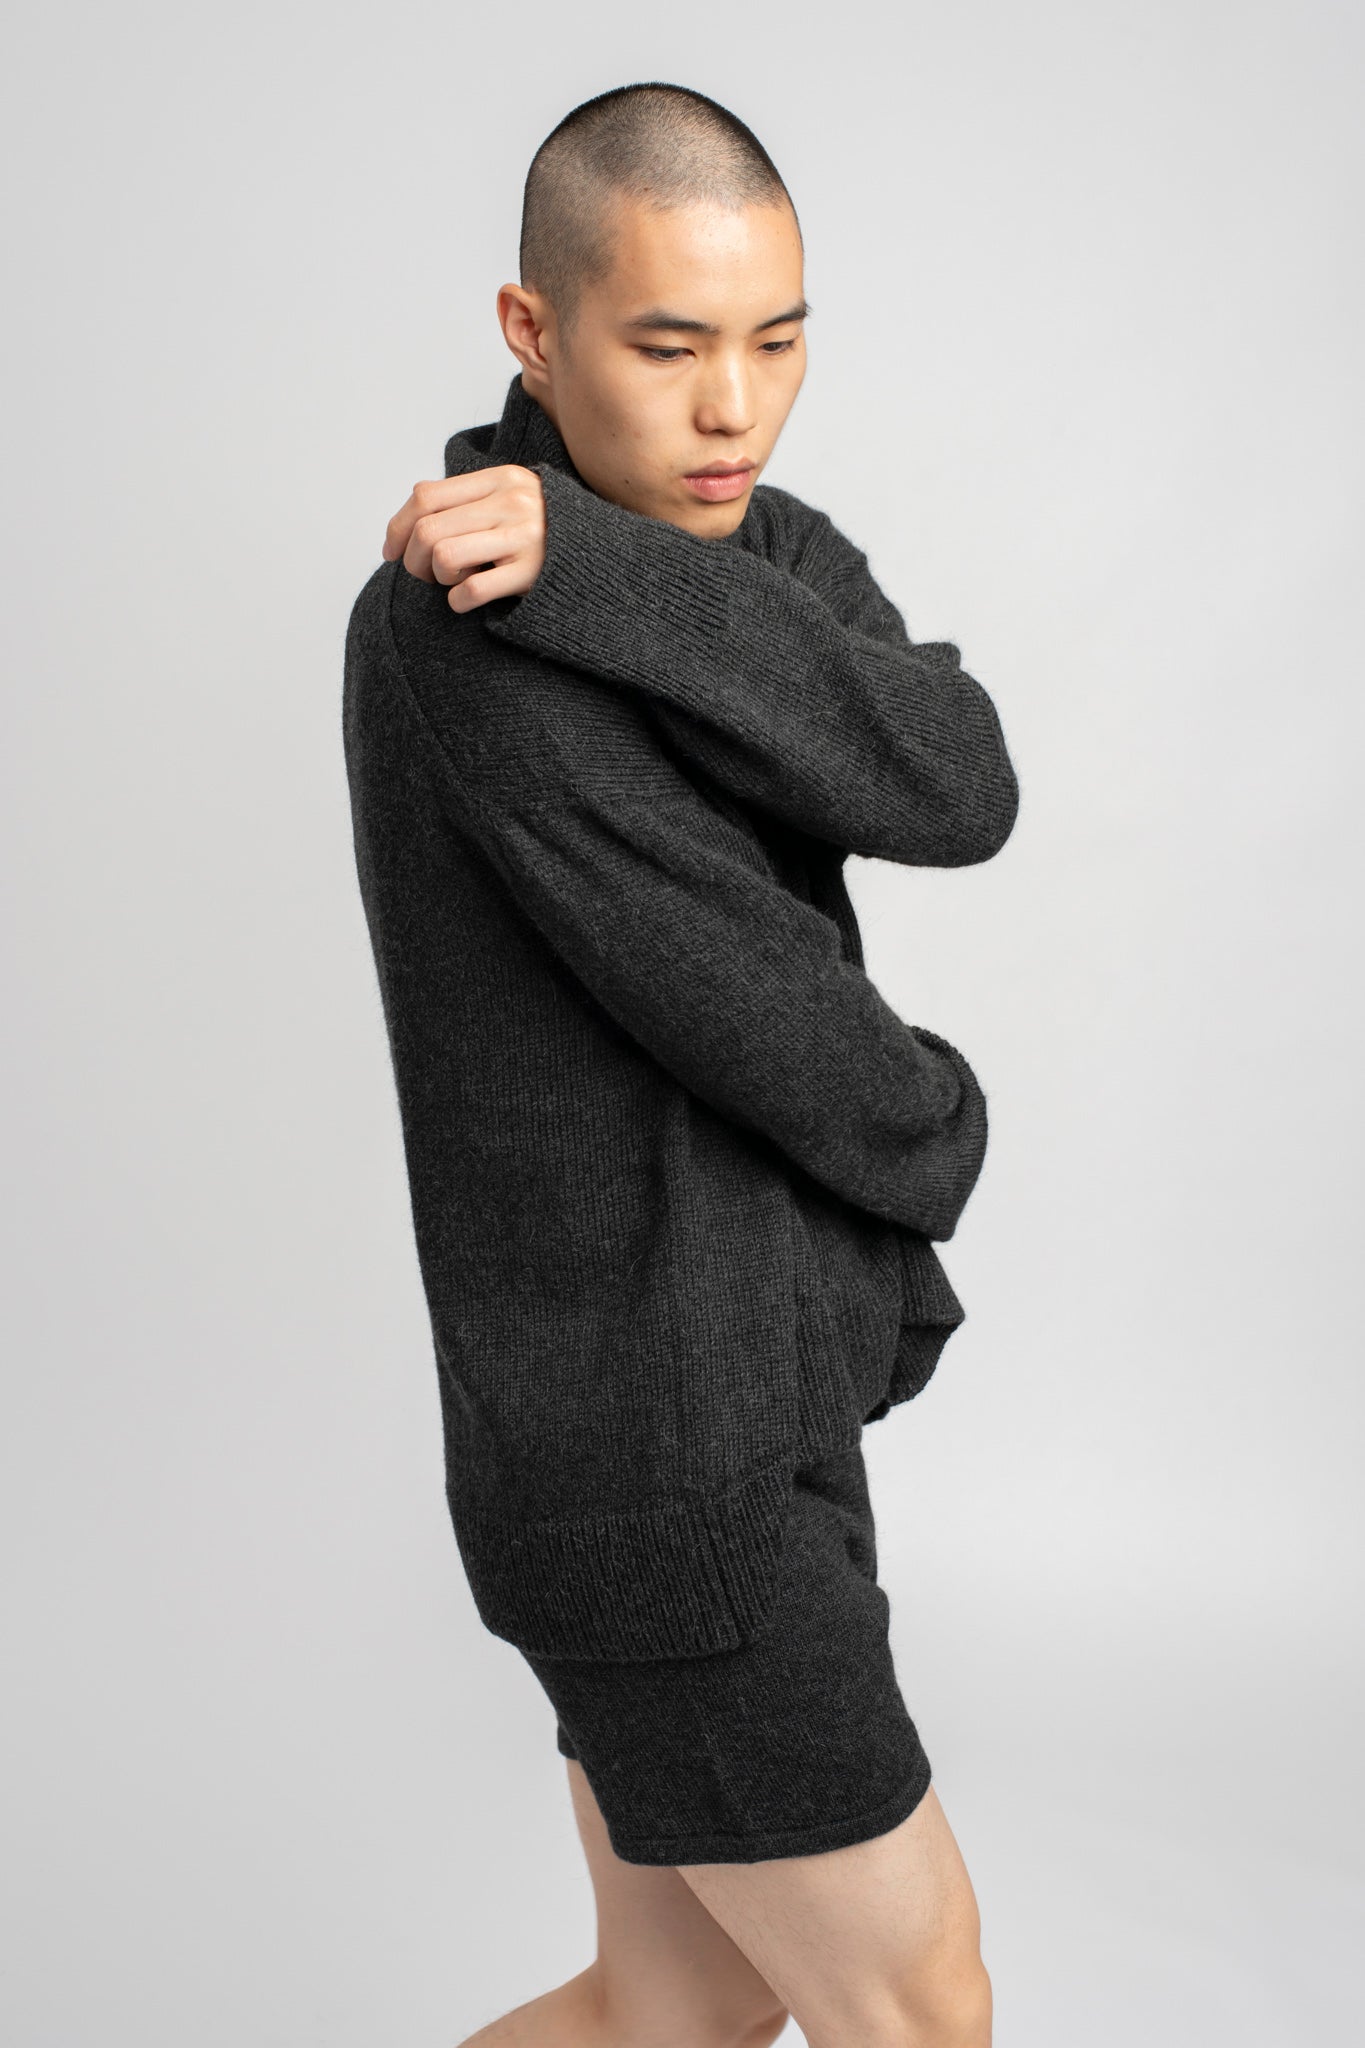 Model wearing turtleneck oversized sweater in dark grey alpaca wool, side